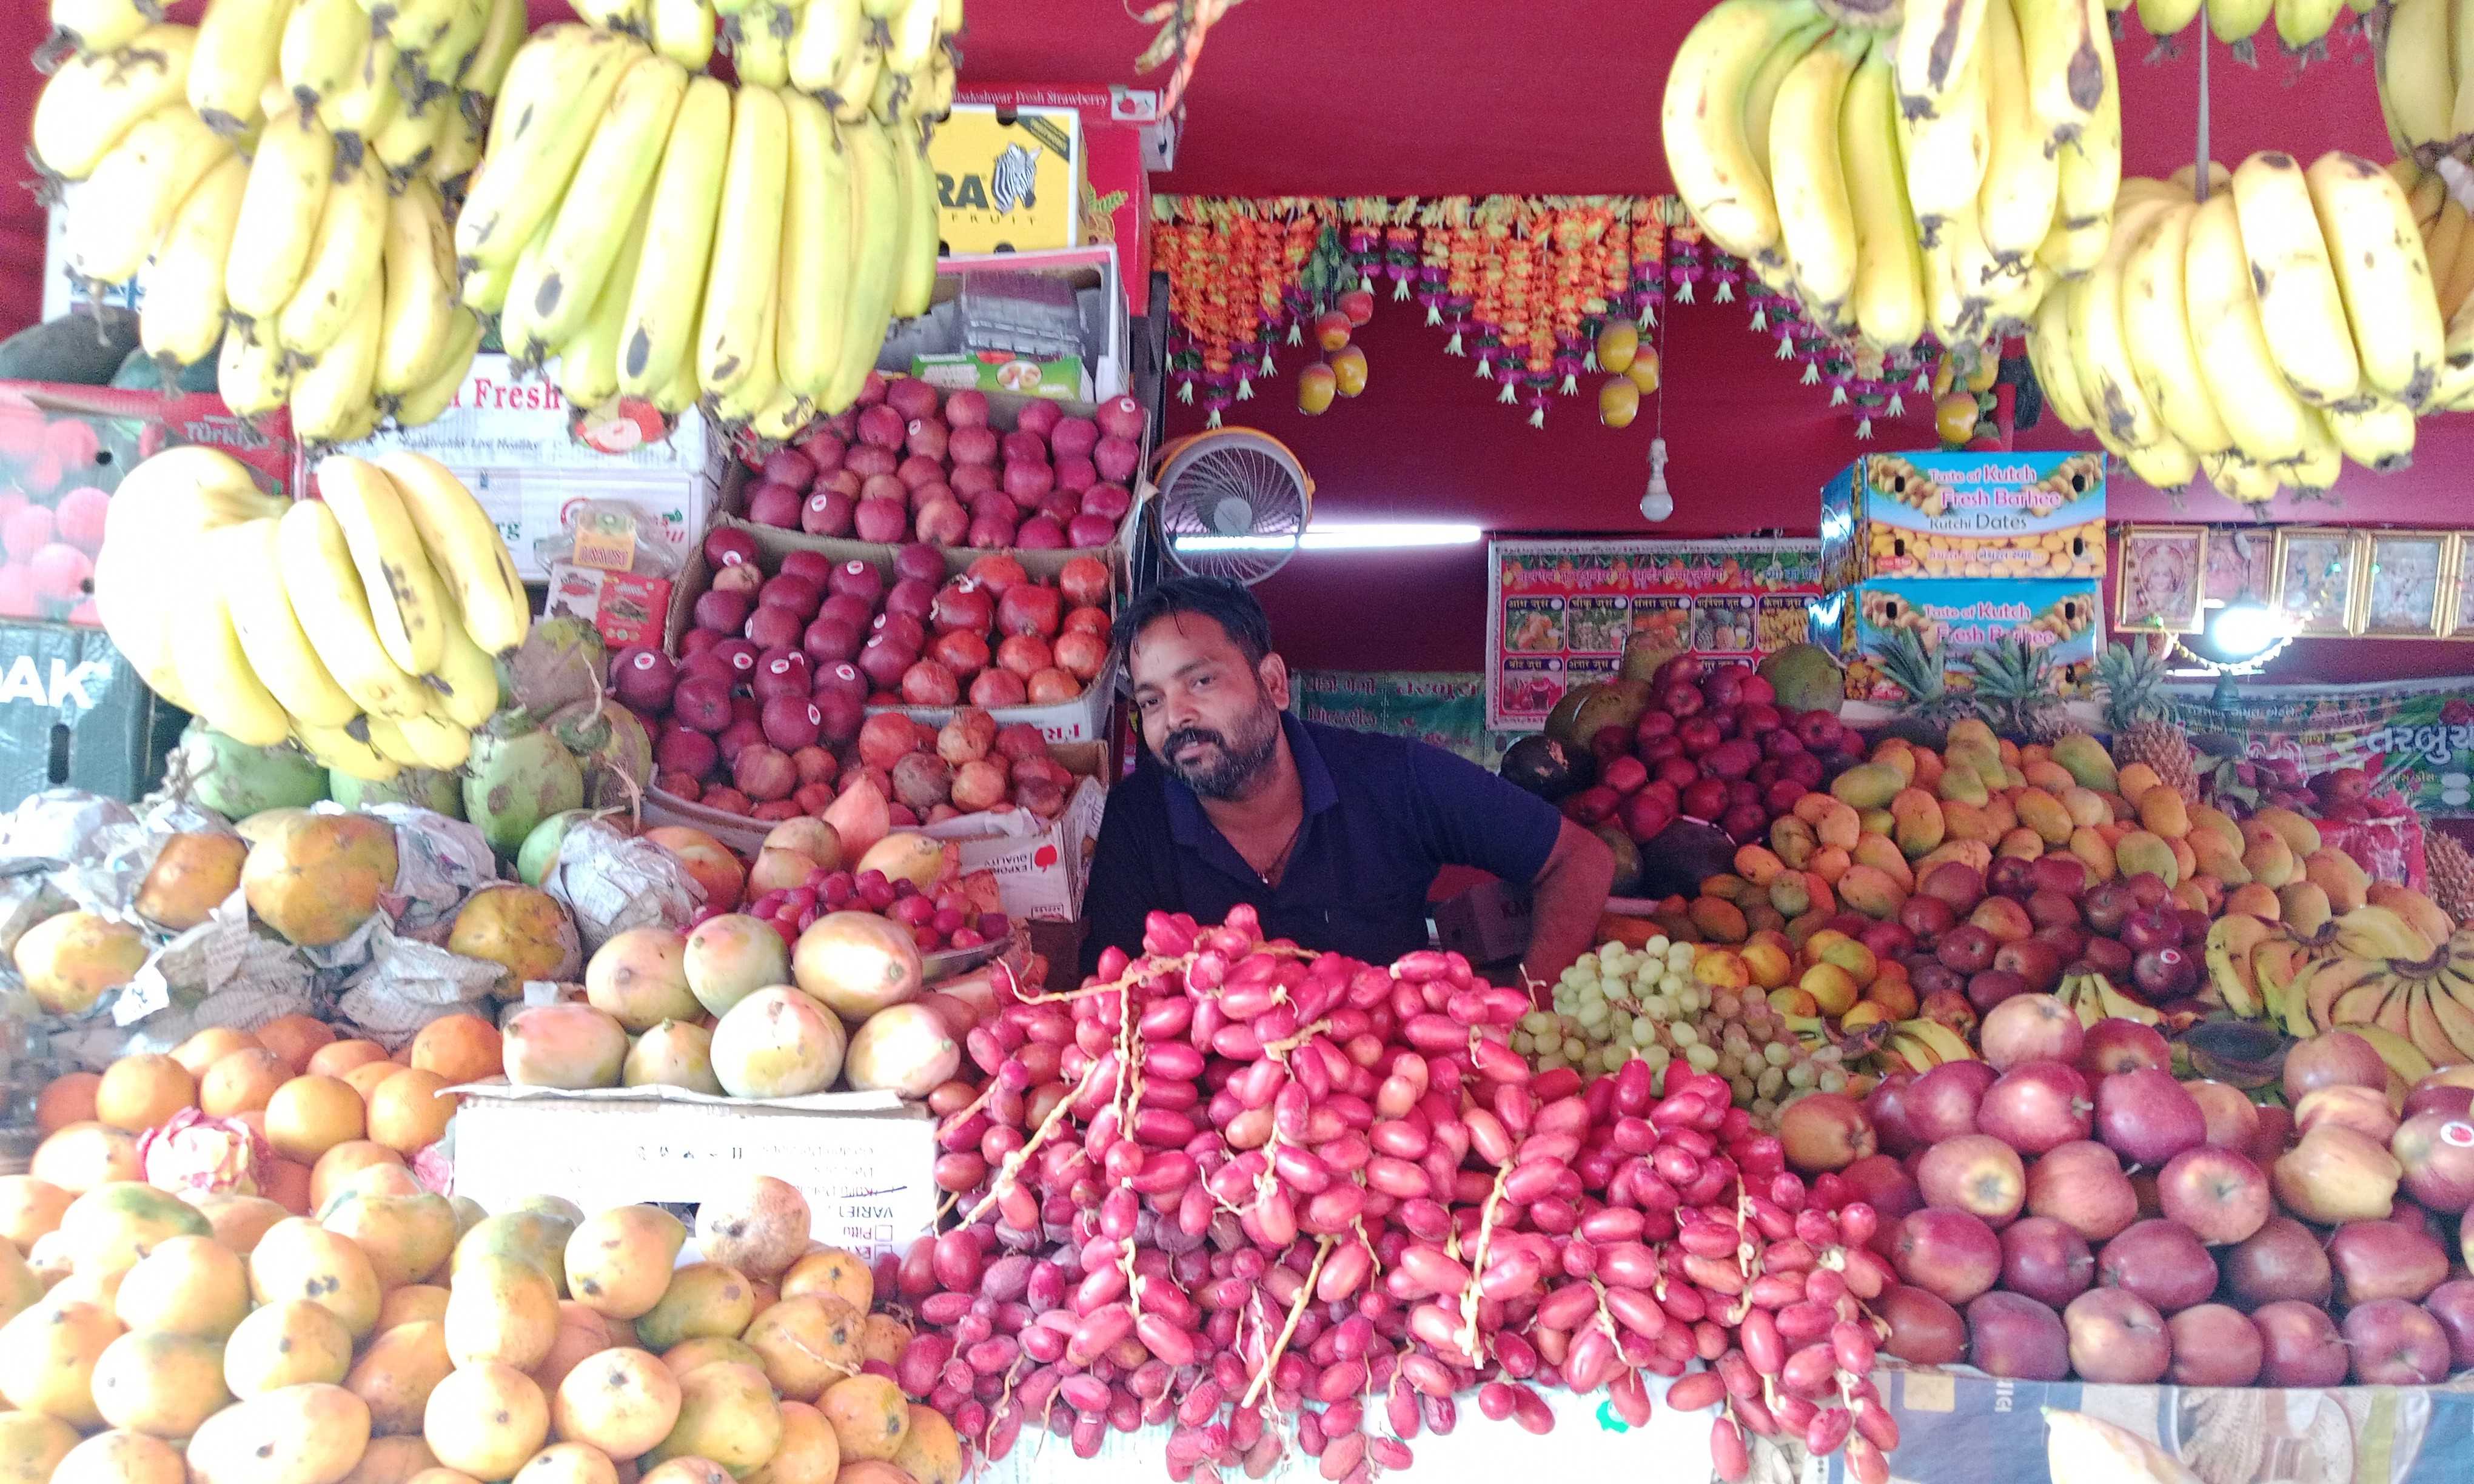 બાલાસિનોરમાં ફળફળાદી વેચતા વેપારીઓની દાદાગીરી સામે આવી
વેપારીઓ દ્વારા મહિલાઓ અને બાળકોને ઉદ્ધતાઈ પૂર્વક જવાબ આપવામાં આવે છે